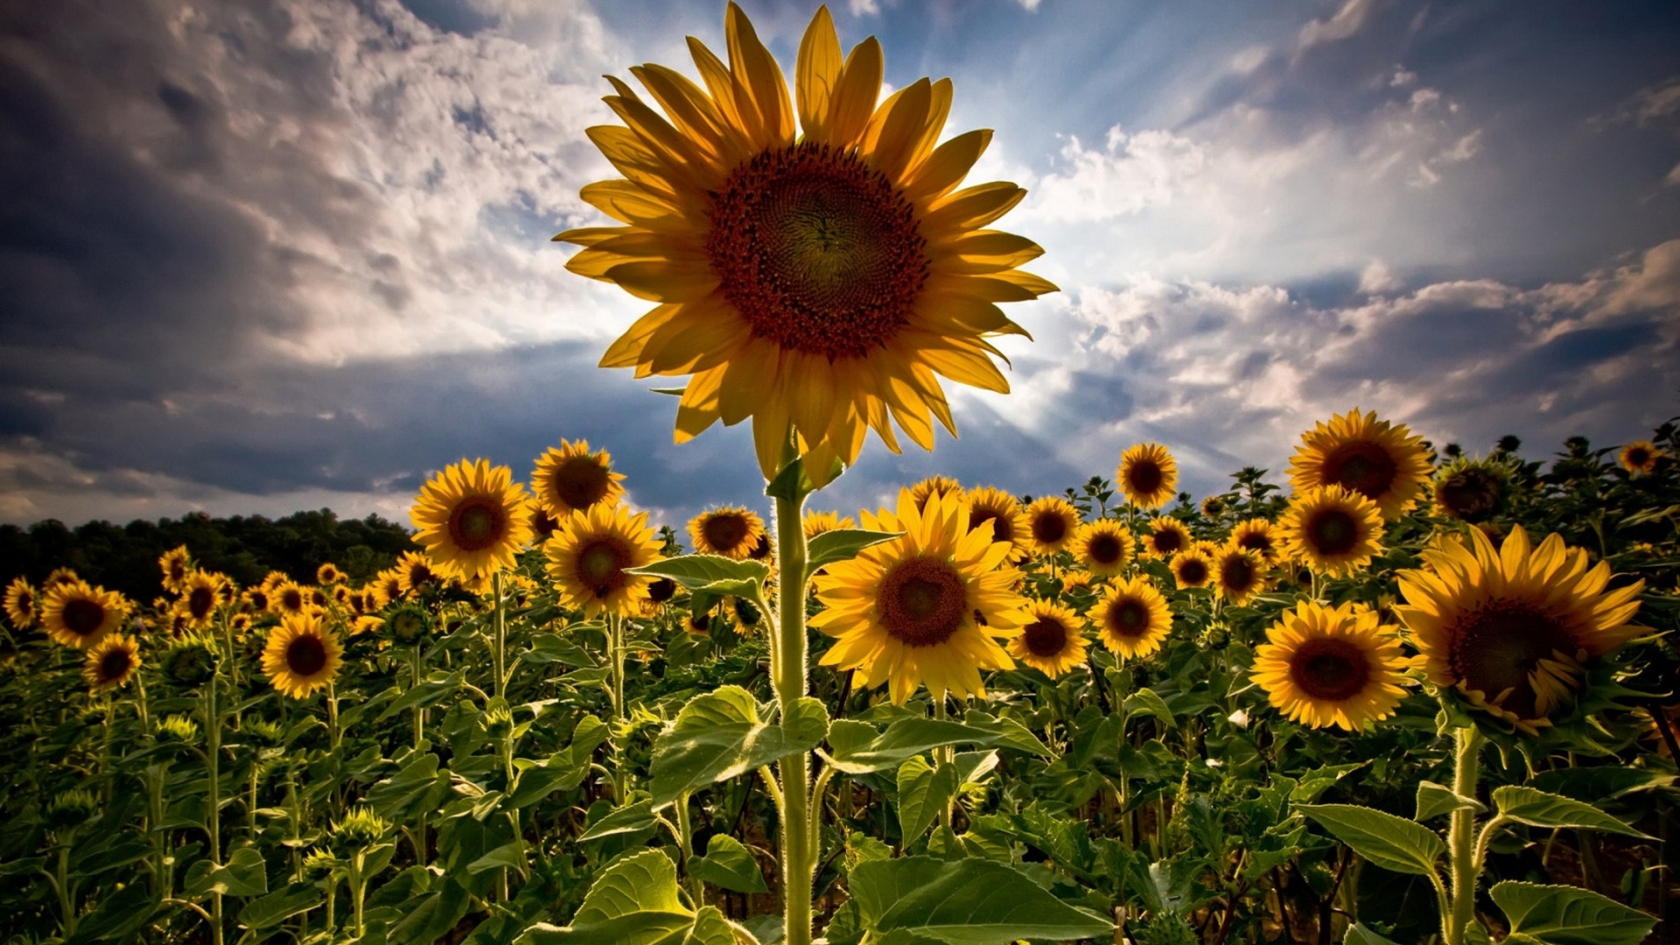 HDR Sunflower for 1680 x 945 HDTV resolution